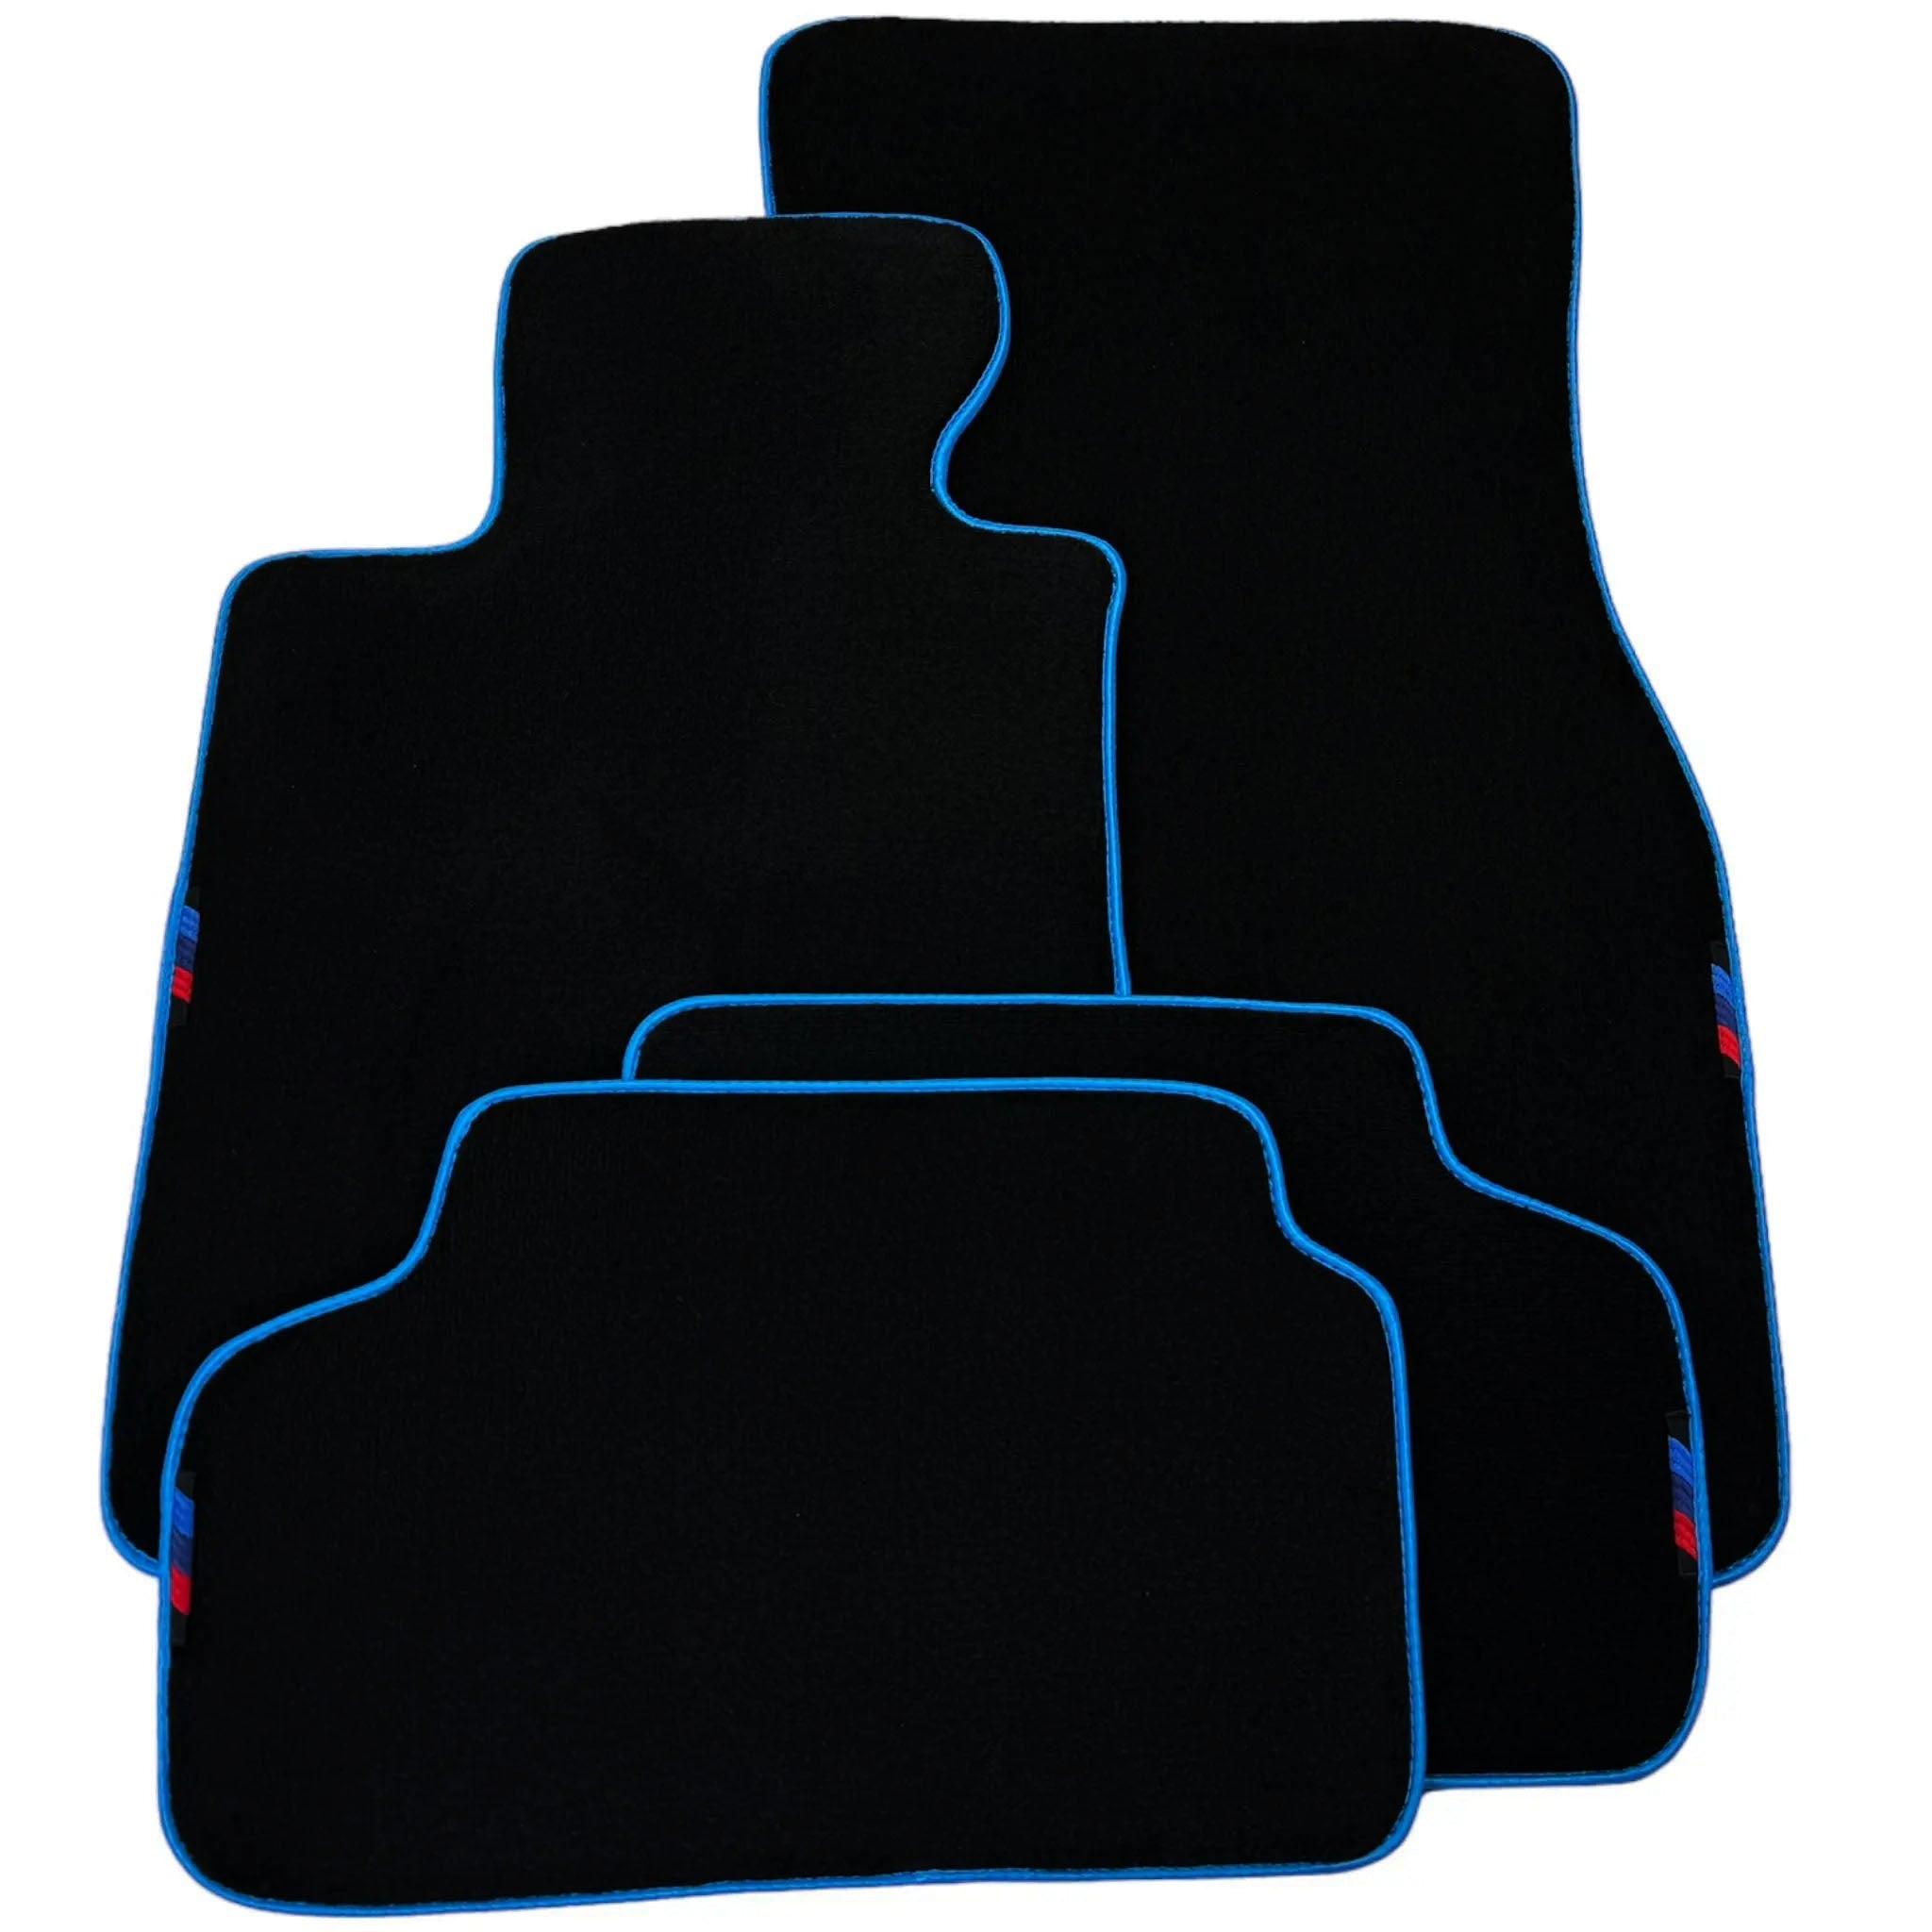 Black Floor Mats For BMW 7 Series E32 | Sky Blue Trim